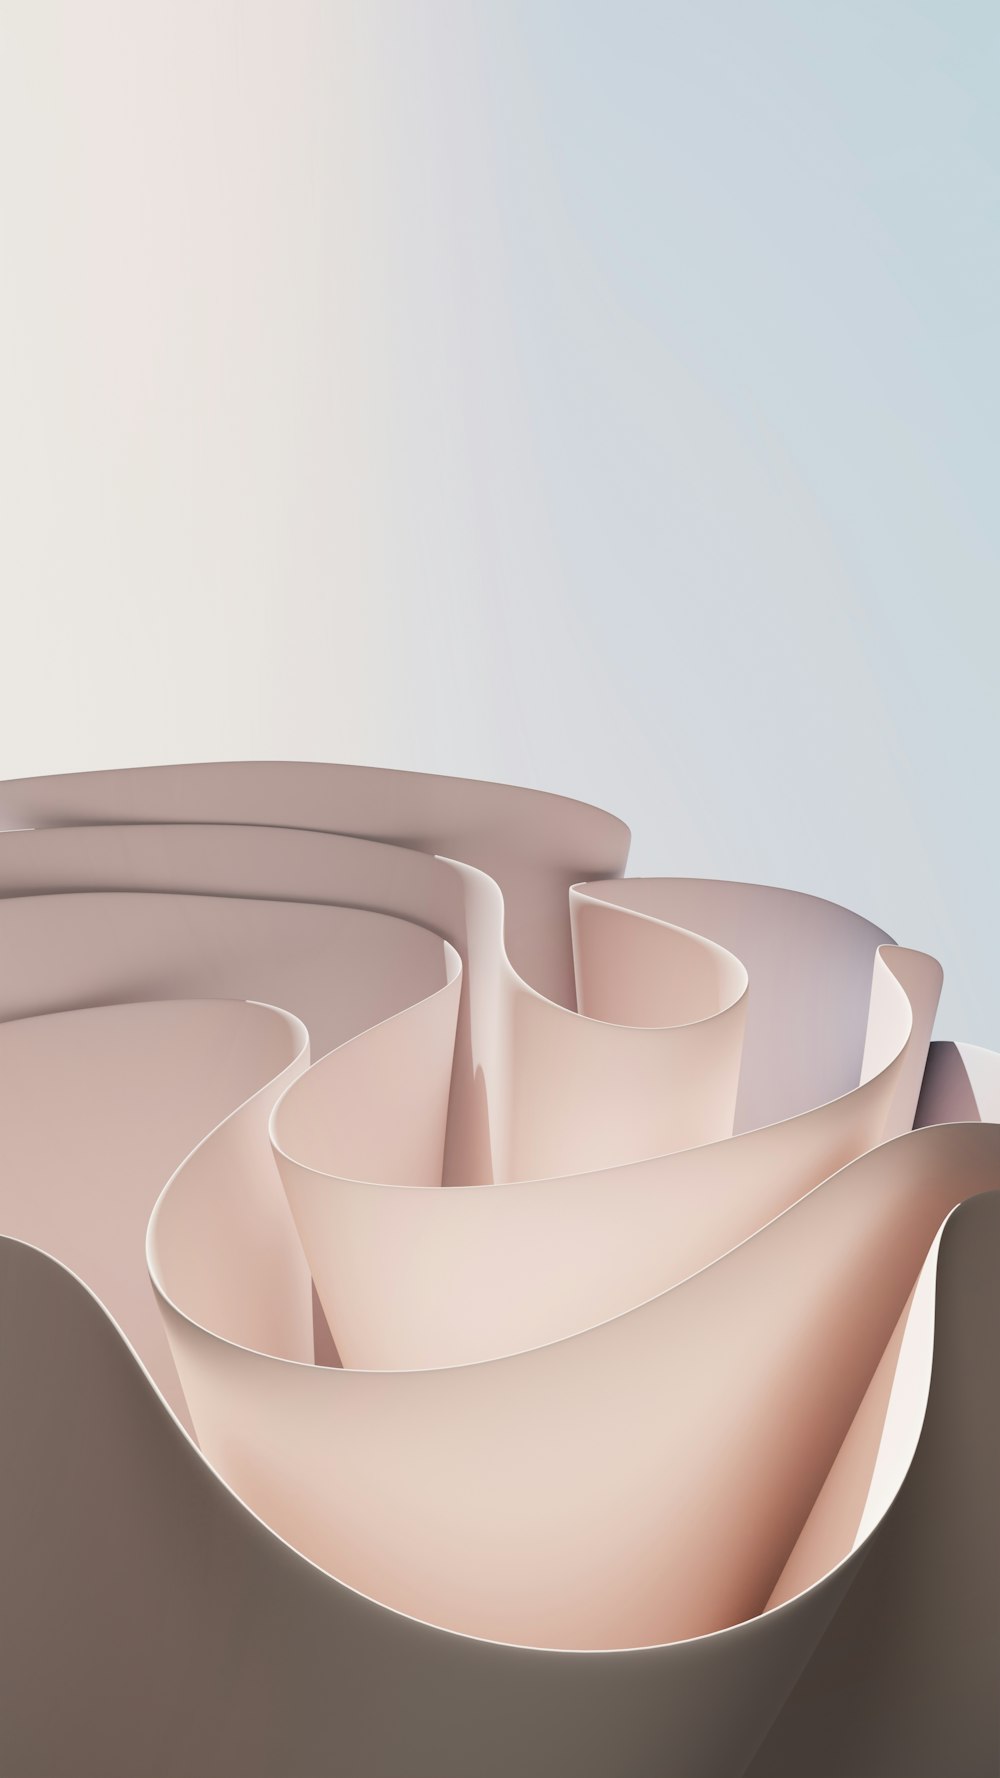 uma imagem gerada por computador de uma superfície curva